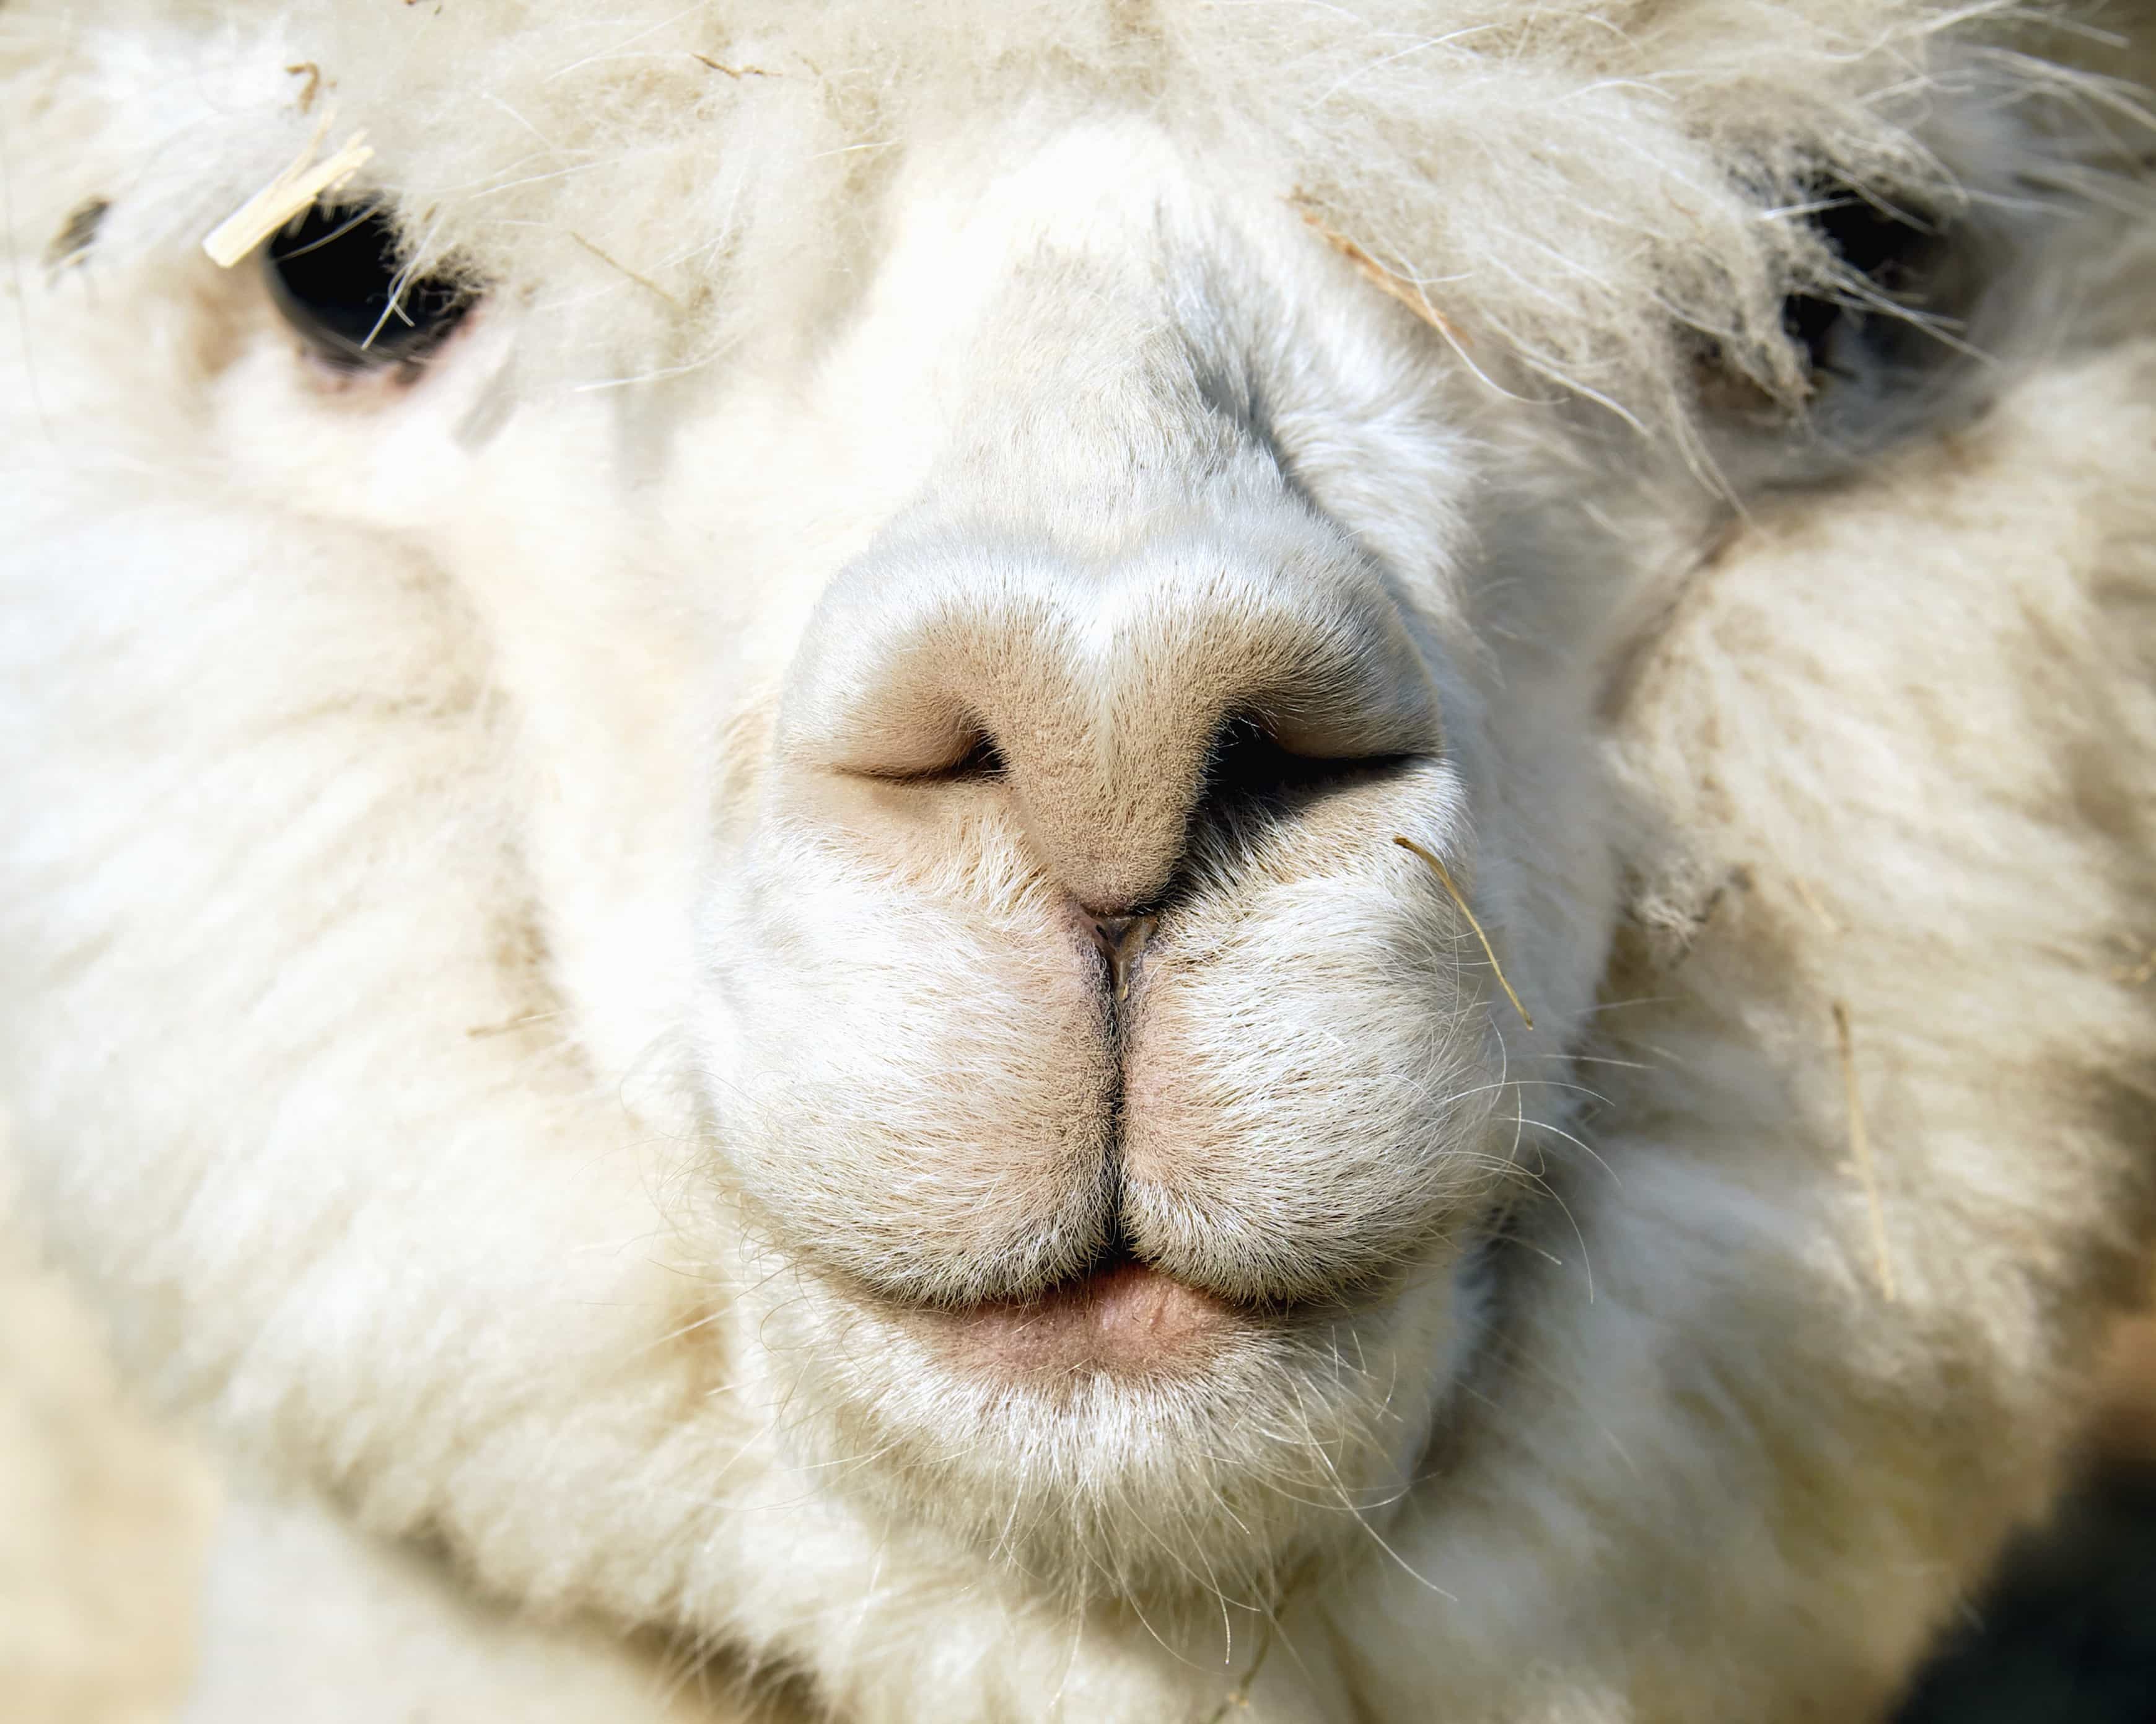 Free picture: alpaca, nature, head, portrait, cute, animal, face, fur, llama